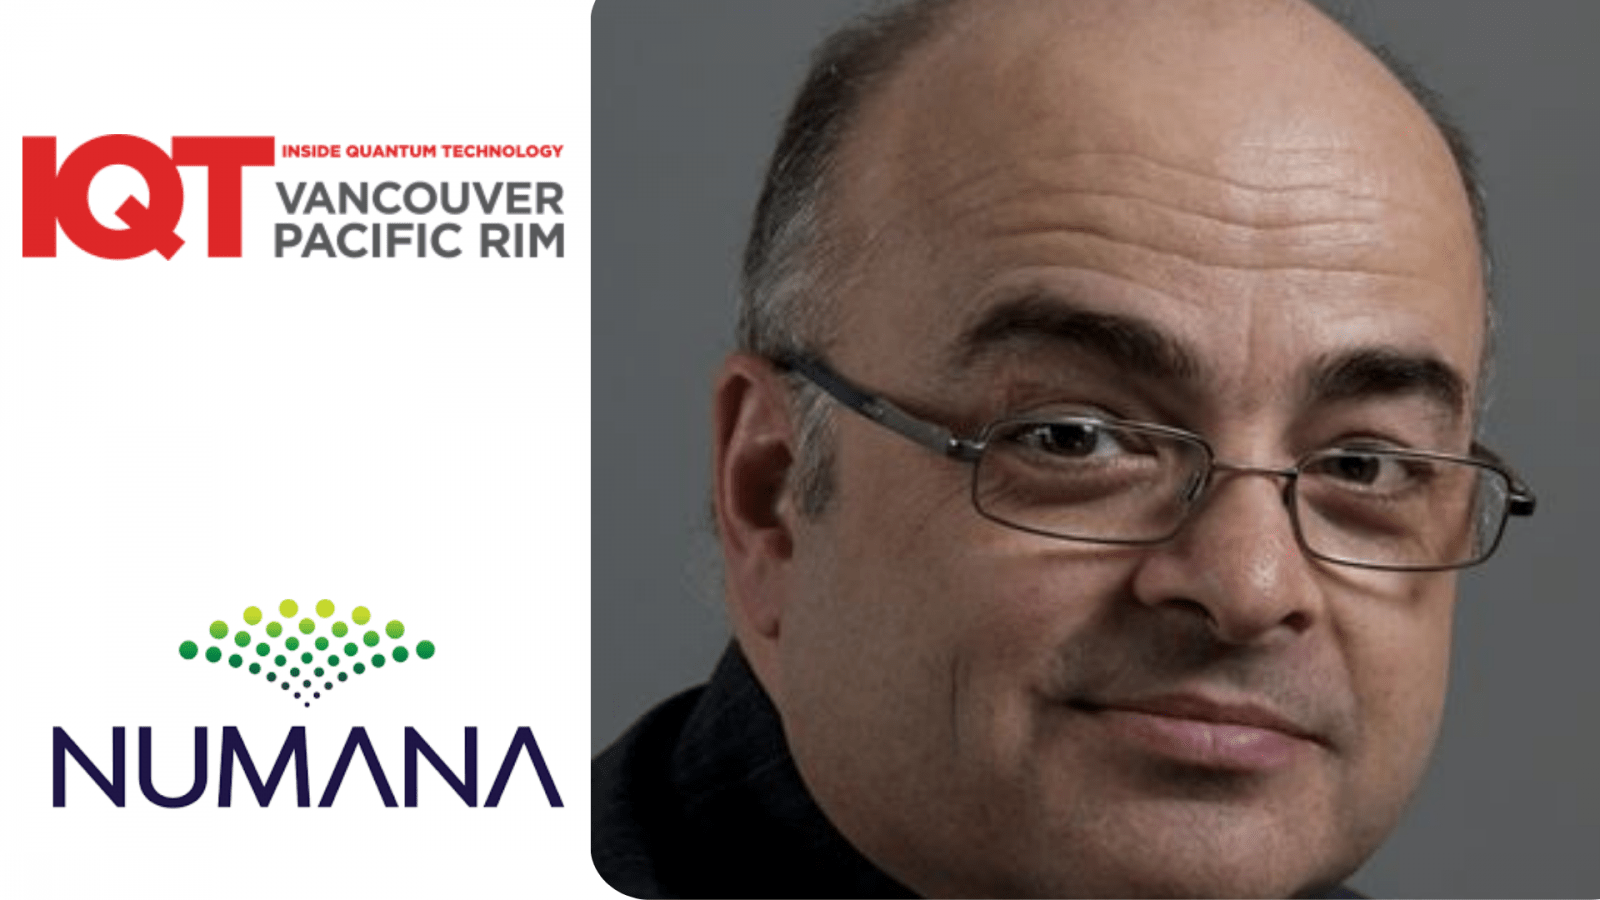 Jacques Mc Neill, coordinador de la iniciativa de comunicación cuántica de Numana, es orador de la conferencia IQT Vancouver/Pacific Rim para el evento de 2024.